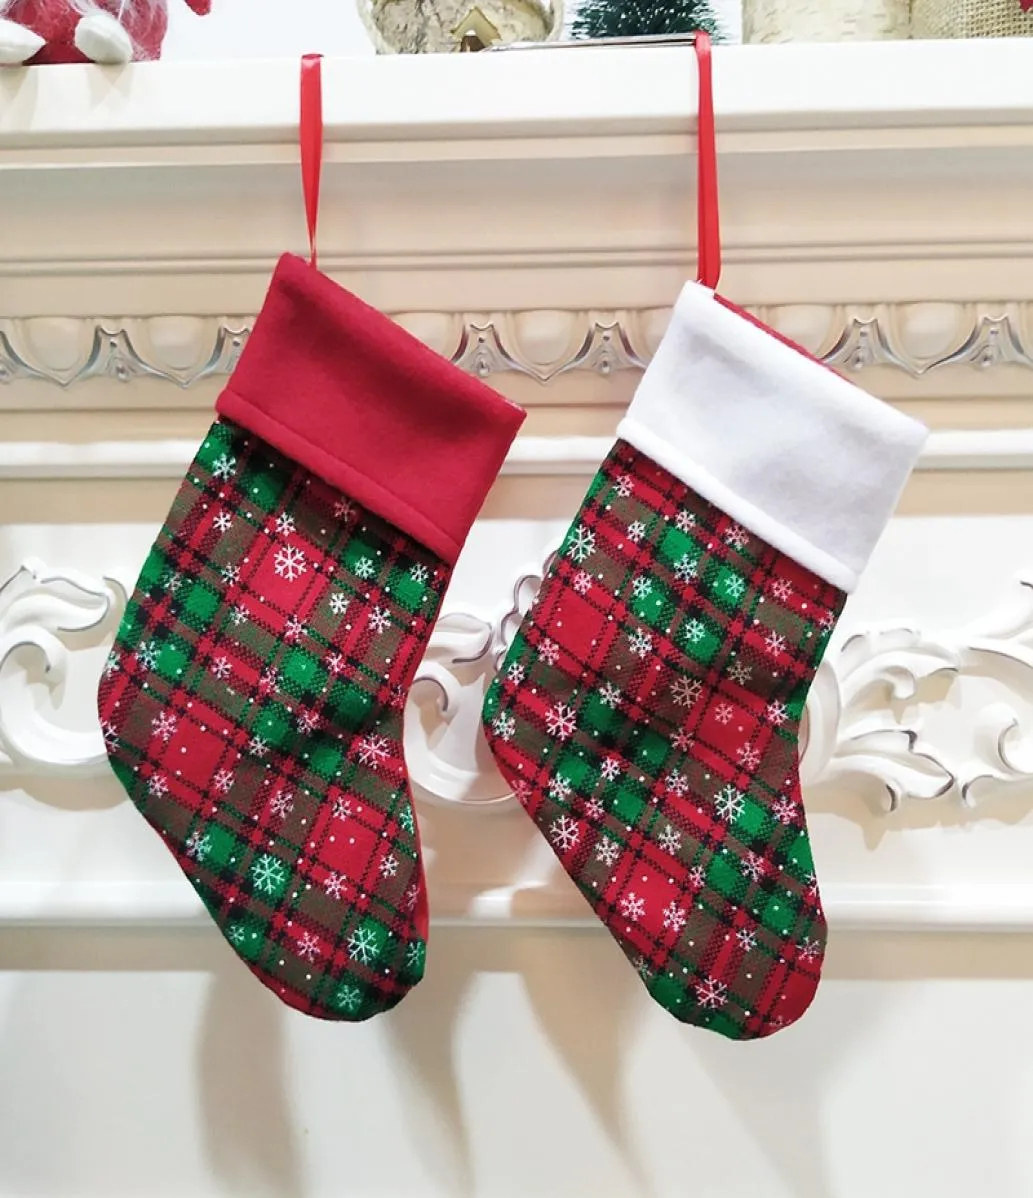 クリスマスストッキングソックススノーフレーク格子縞のクリスマスぶら下げた子供たちのクリスマスギフトキャンディーバッグ装飾クリスマスツリー飾り